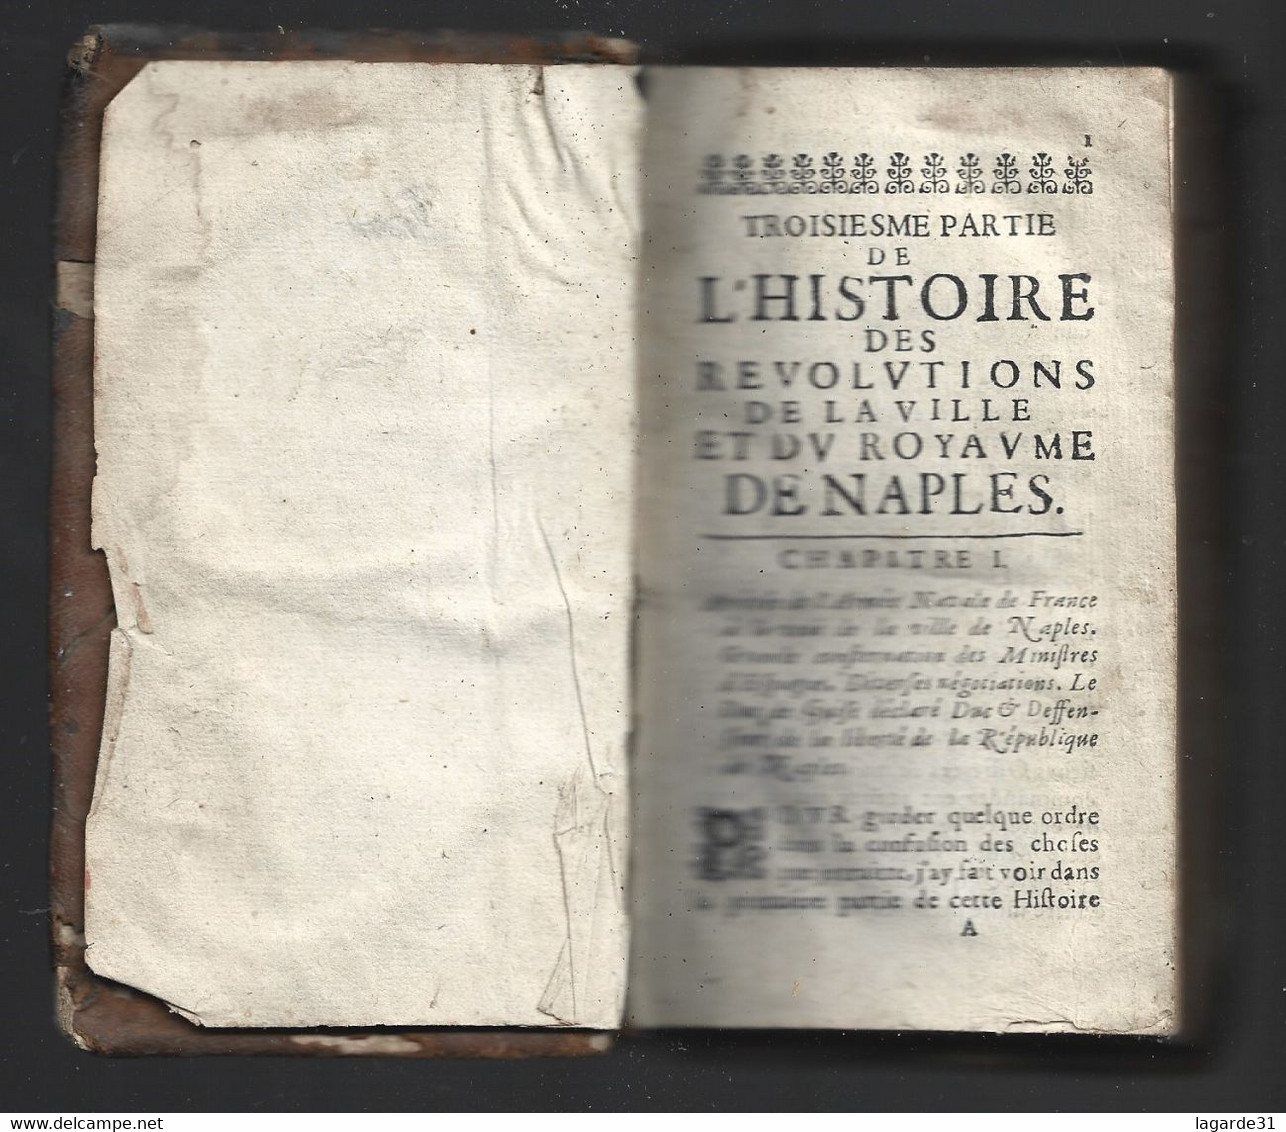 Histoire Des Révolutions De La Ville Et Du Royaume De Naples Troisieme Partie - Jusque 1700